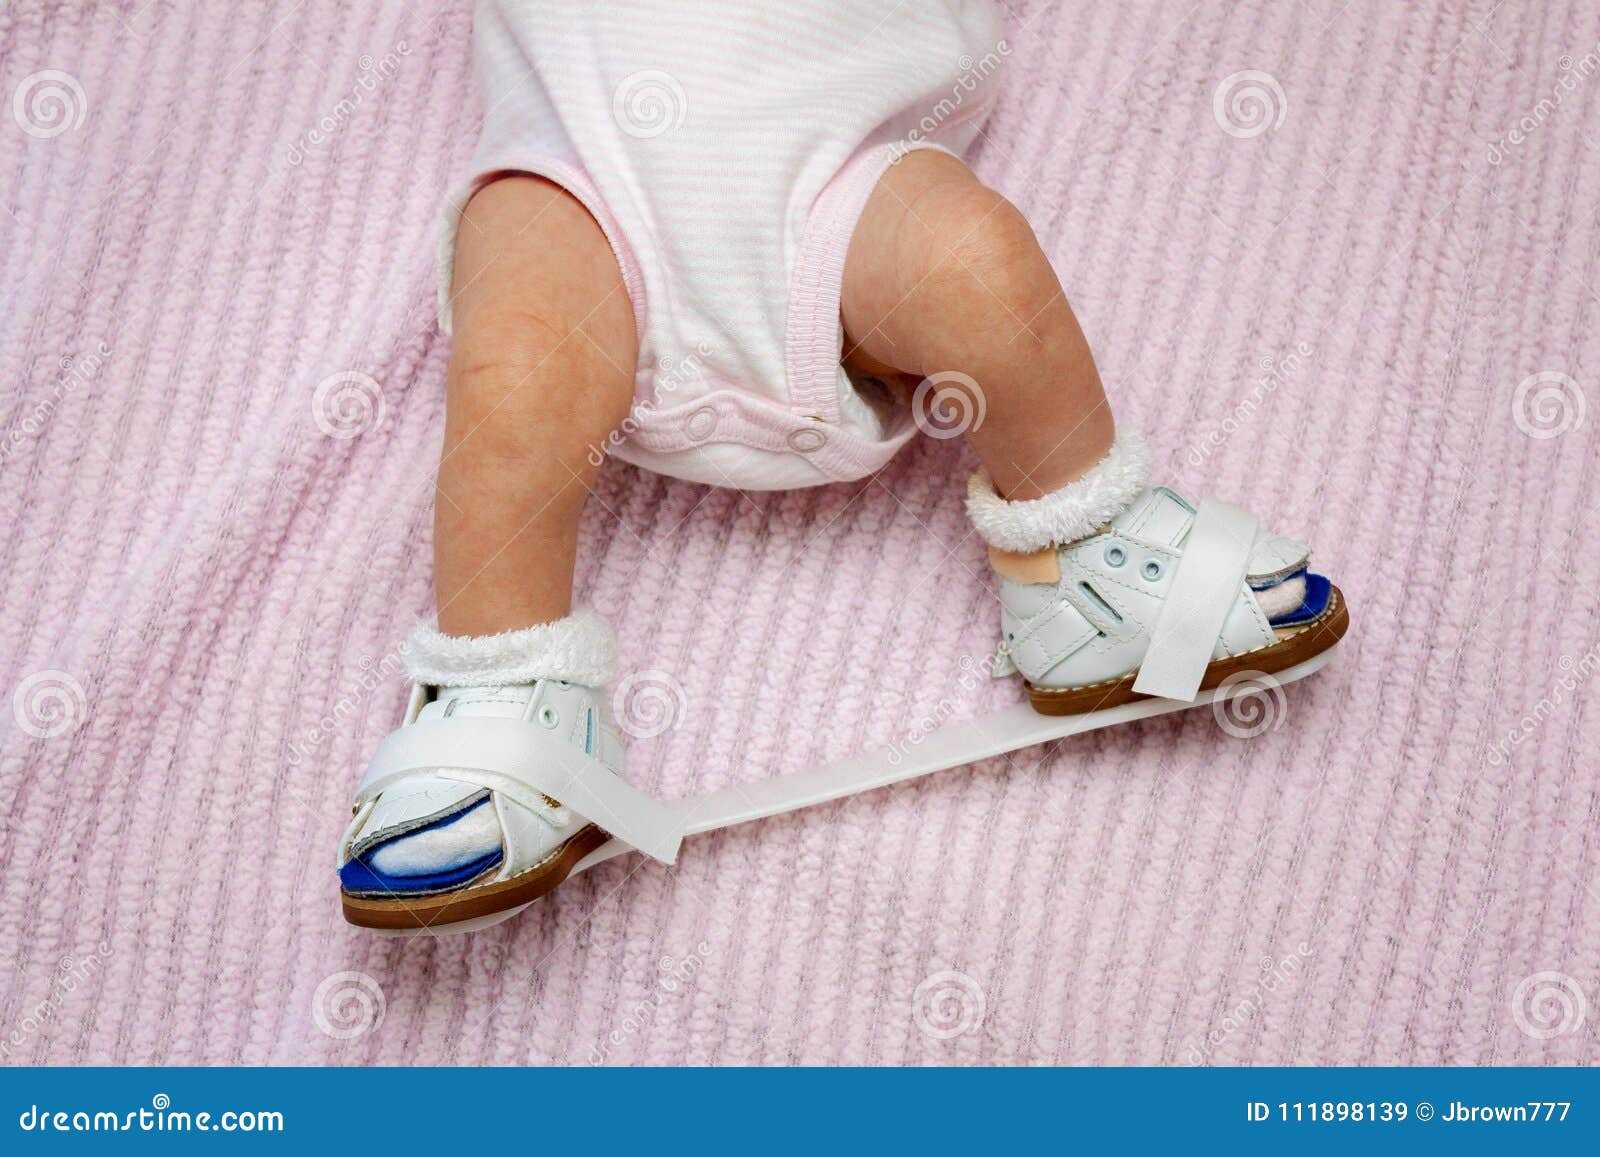 scarpe ortopediche neonato